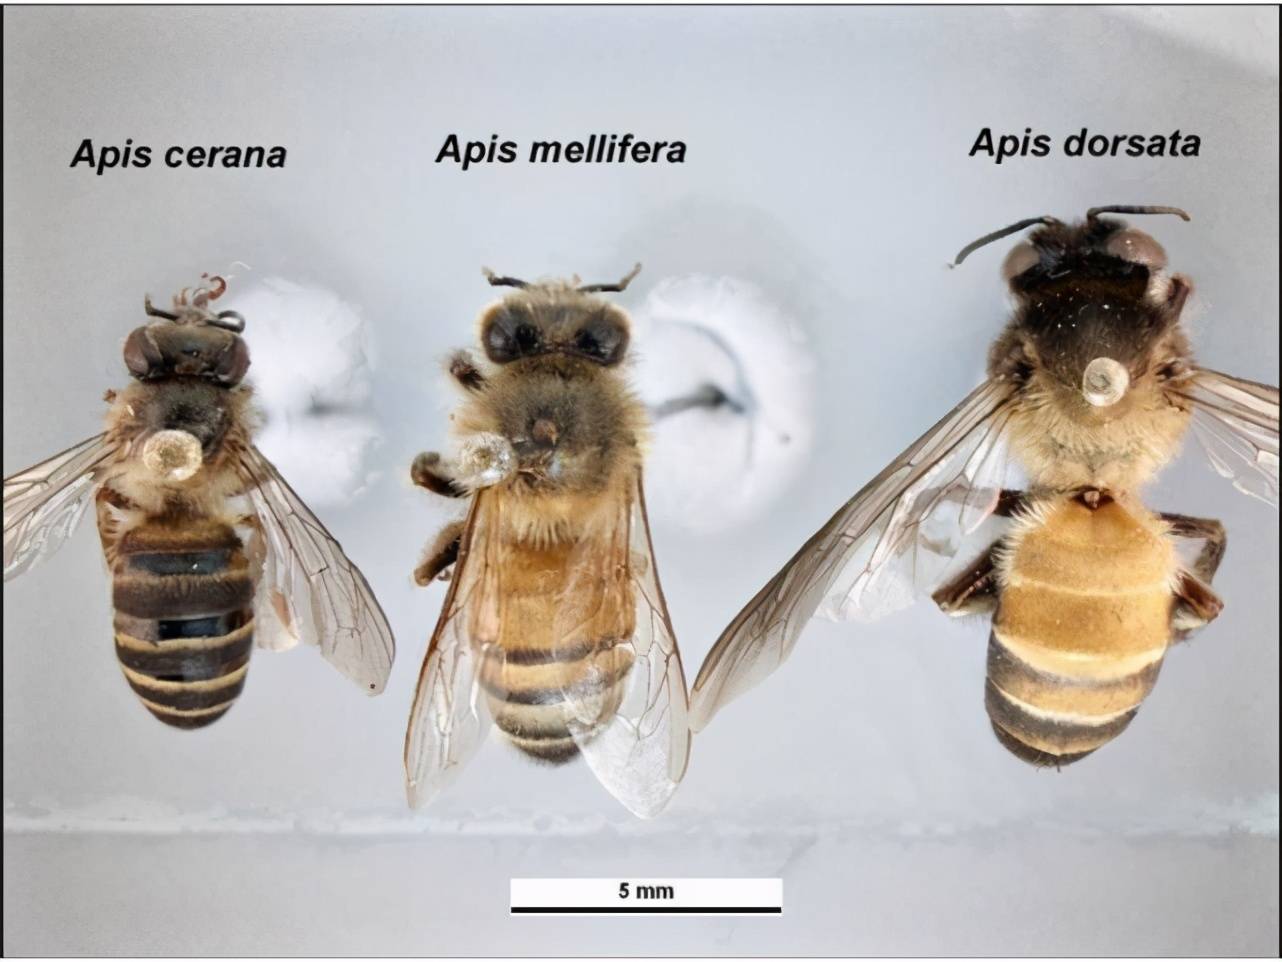 原创第一张蜜蜂分布世界地图公布填补了知识空白也让科学家吃惊了